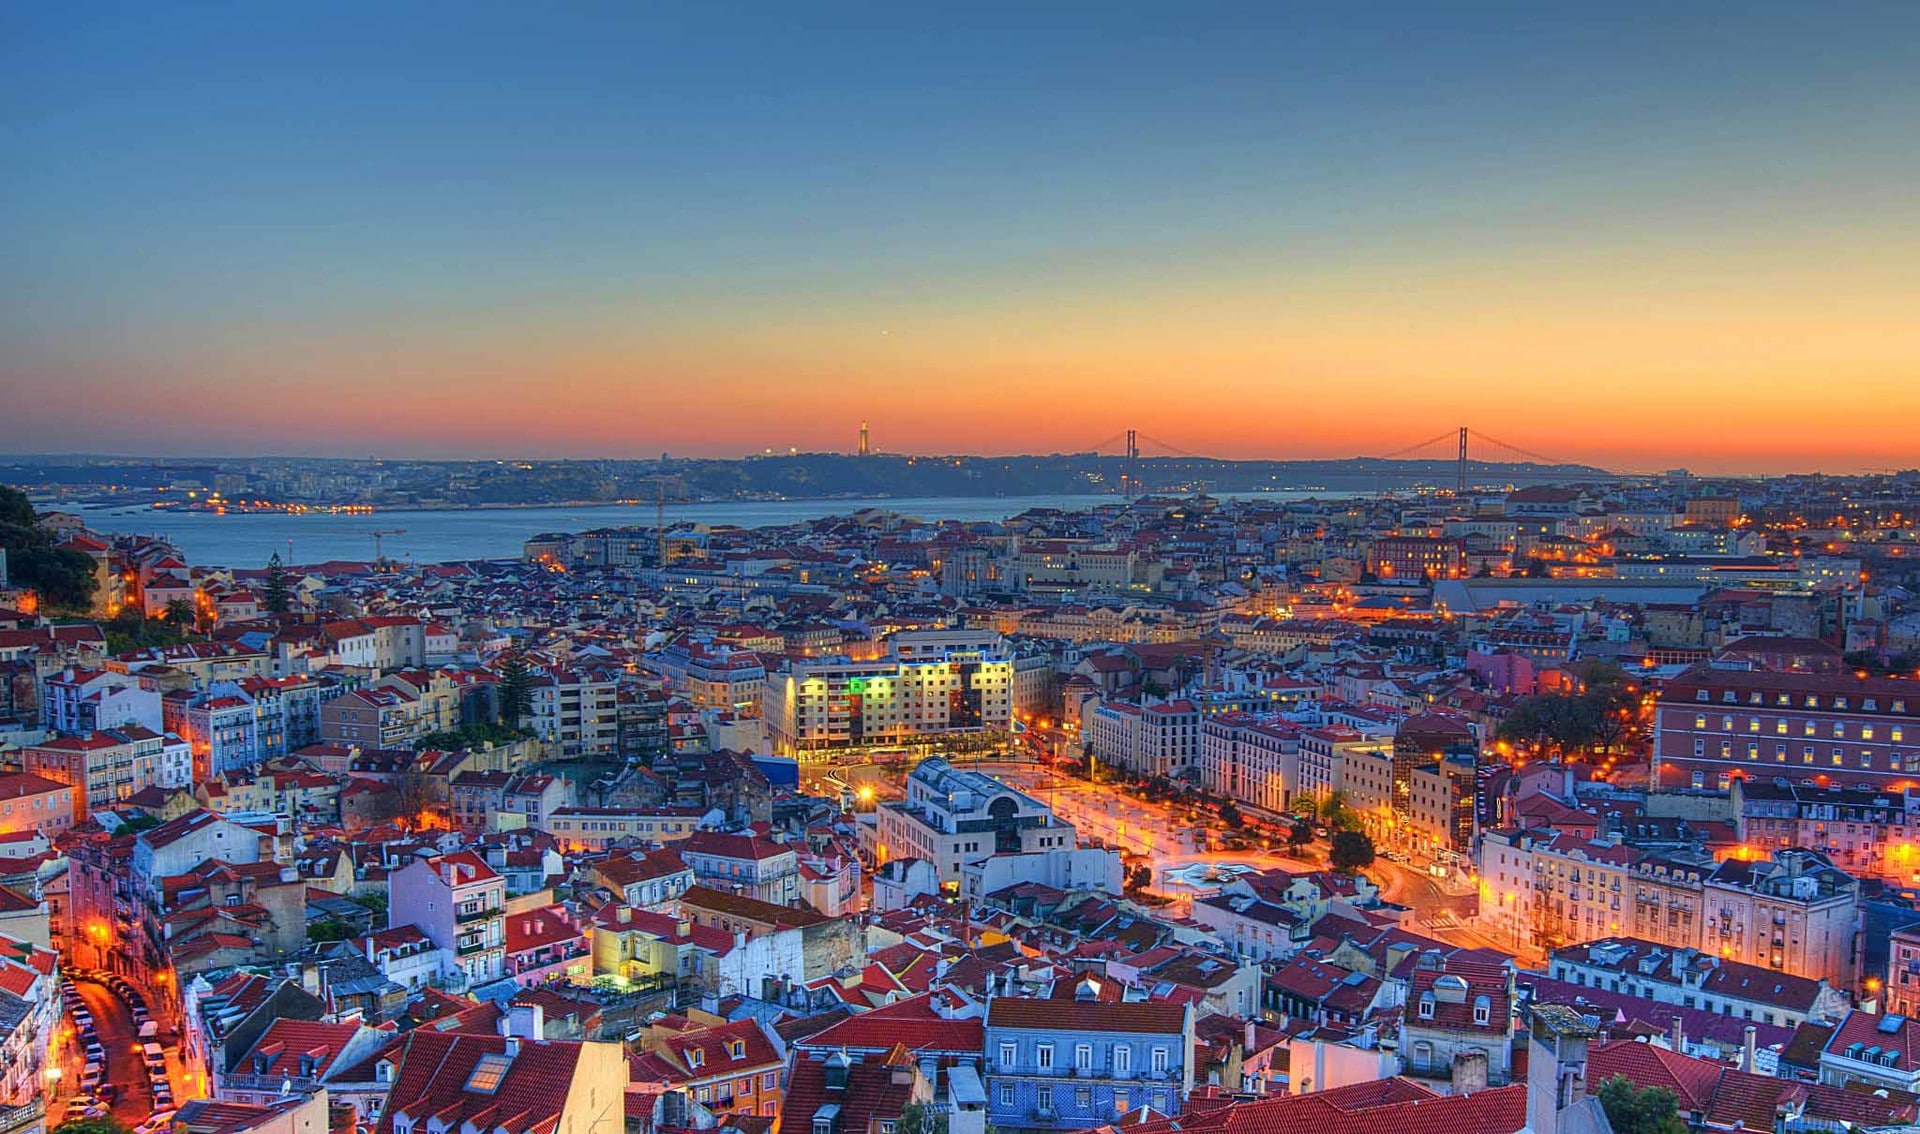 Portekiz Golden Visa Programı İlk Meyvesini Verdi: Programa İlk Başvuranlar Artık Portekiz Vatandaşı